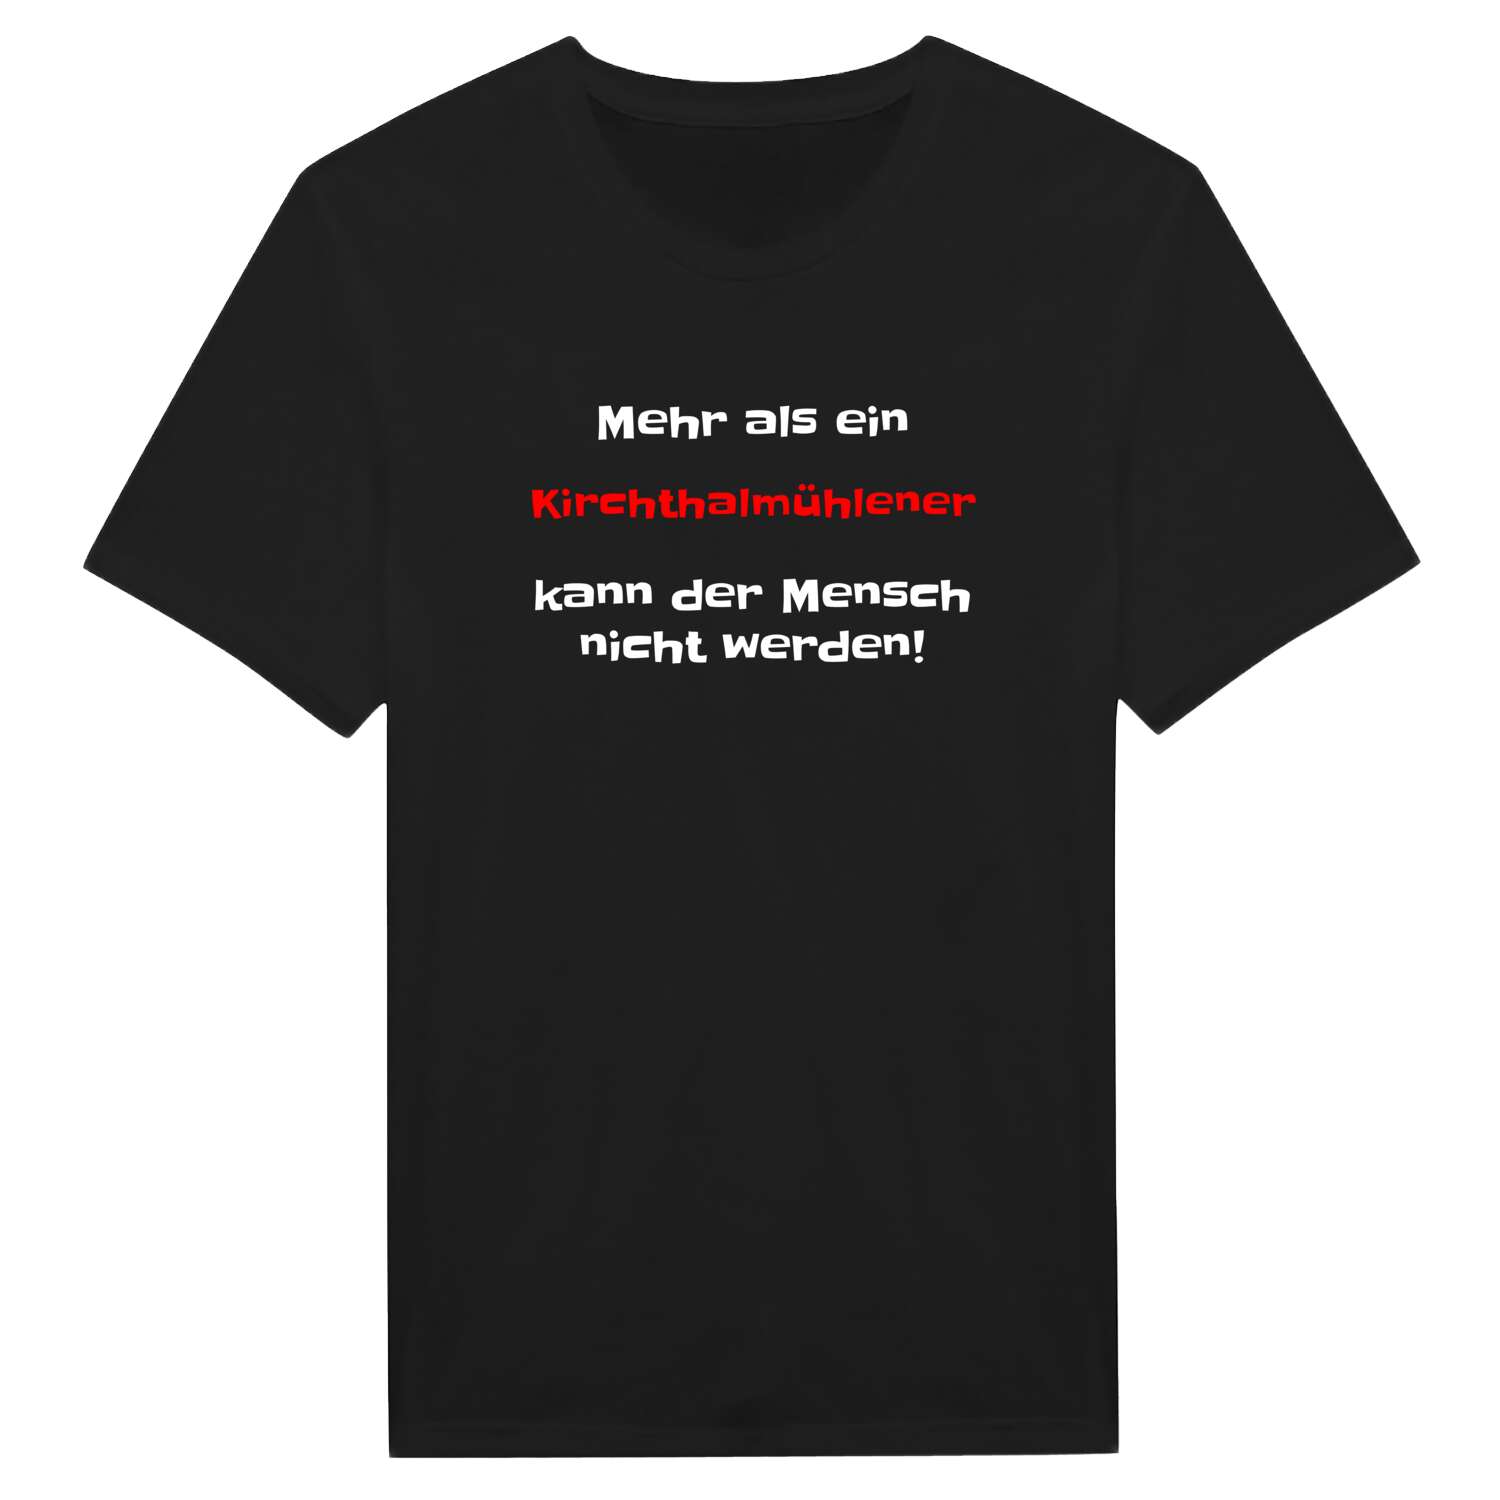 Kirchthalmühle T-Shirt »Mehr als ein«